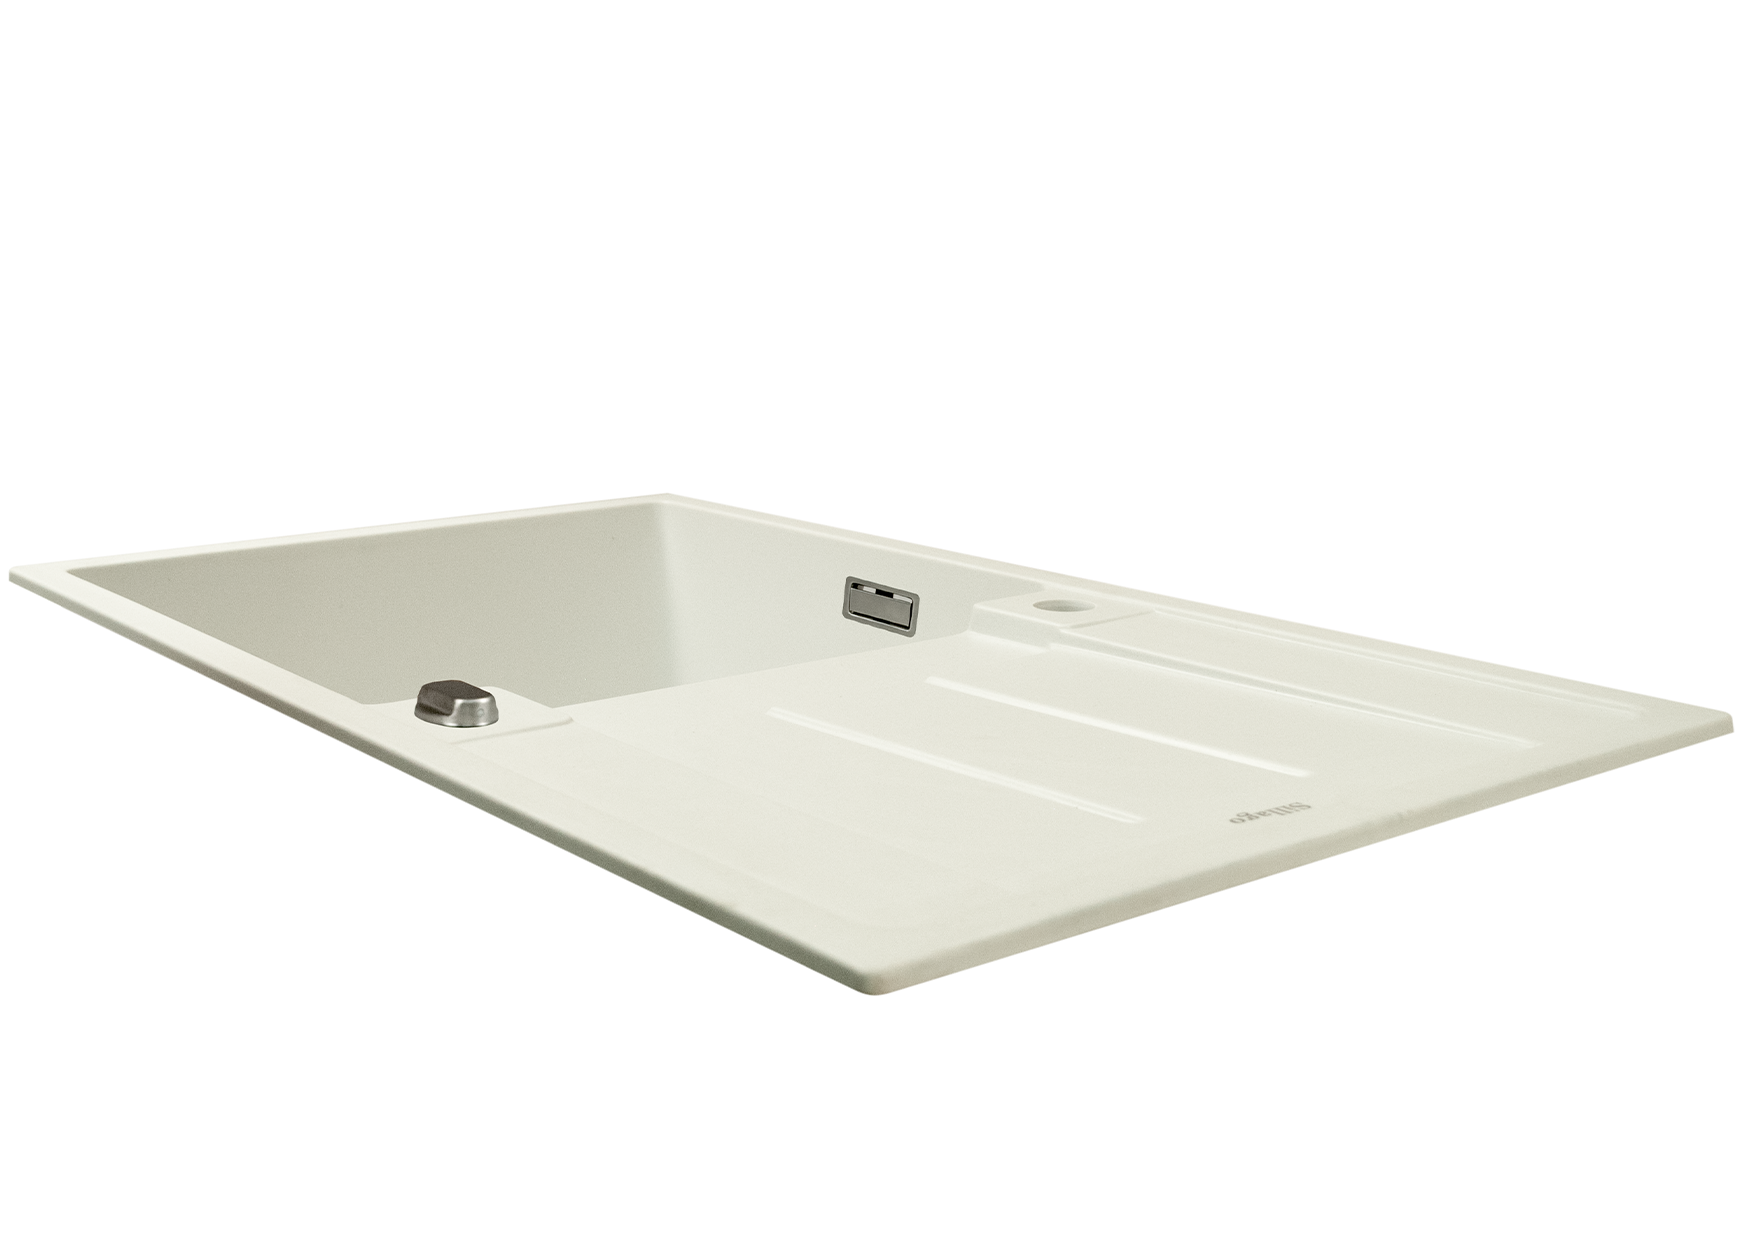 Alva Large Bowl Quartz Kitchen Sink- White